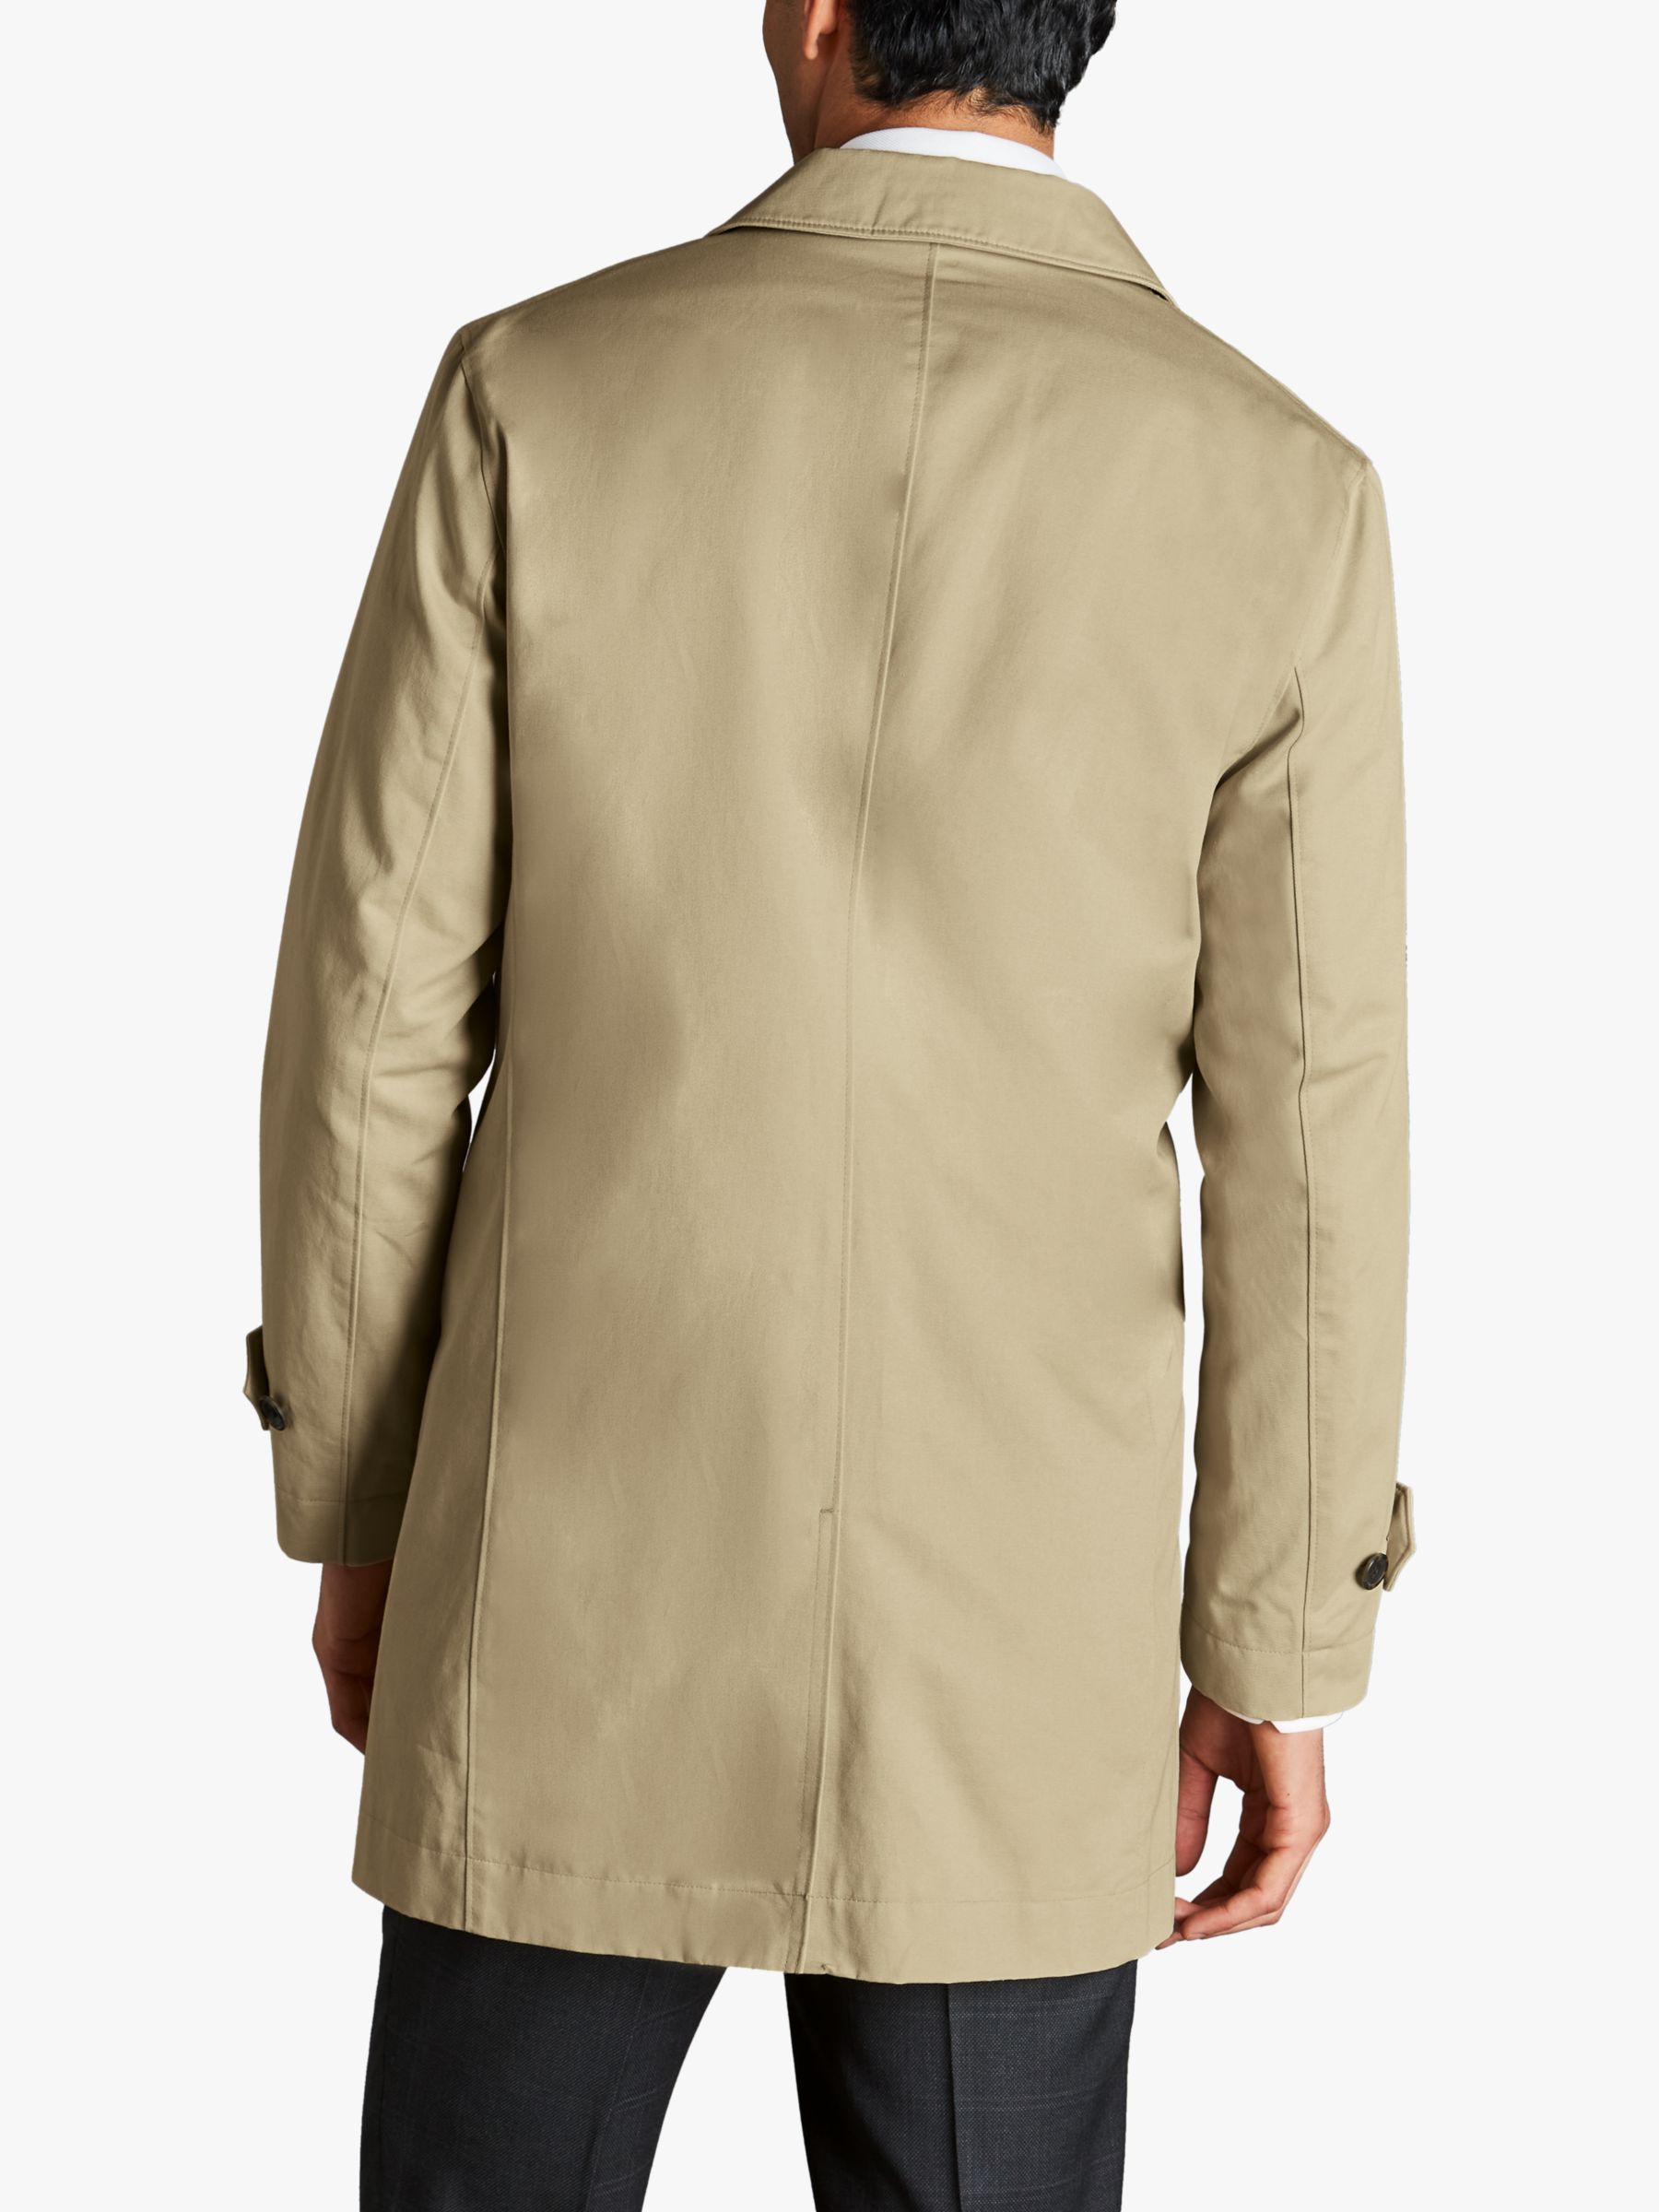 Charles Tyrwhitt Classic Showerproof Raincoat, Limestone, 34R